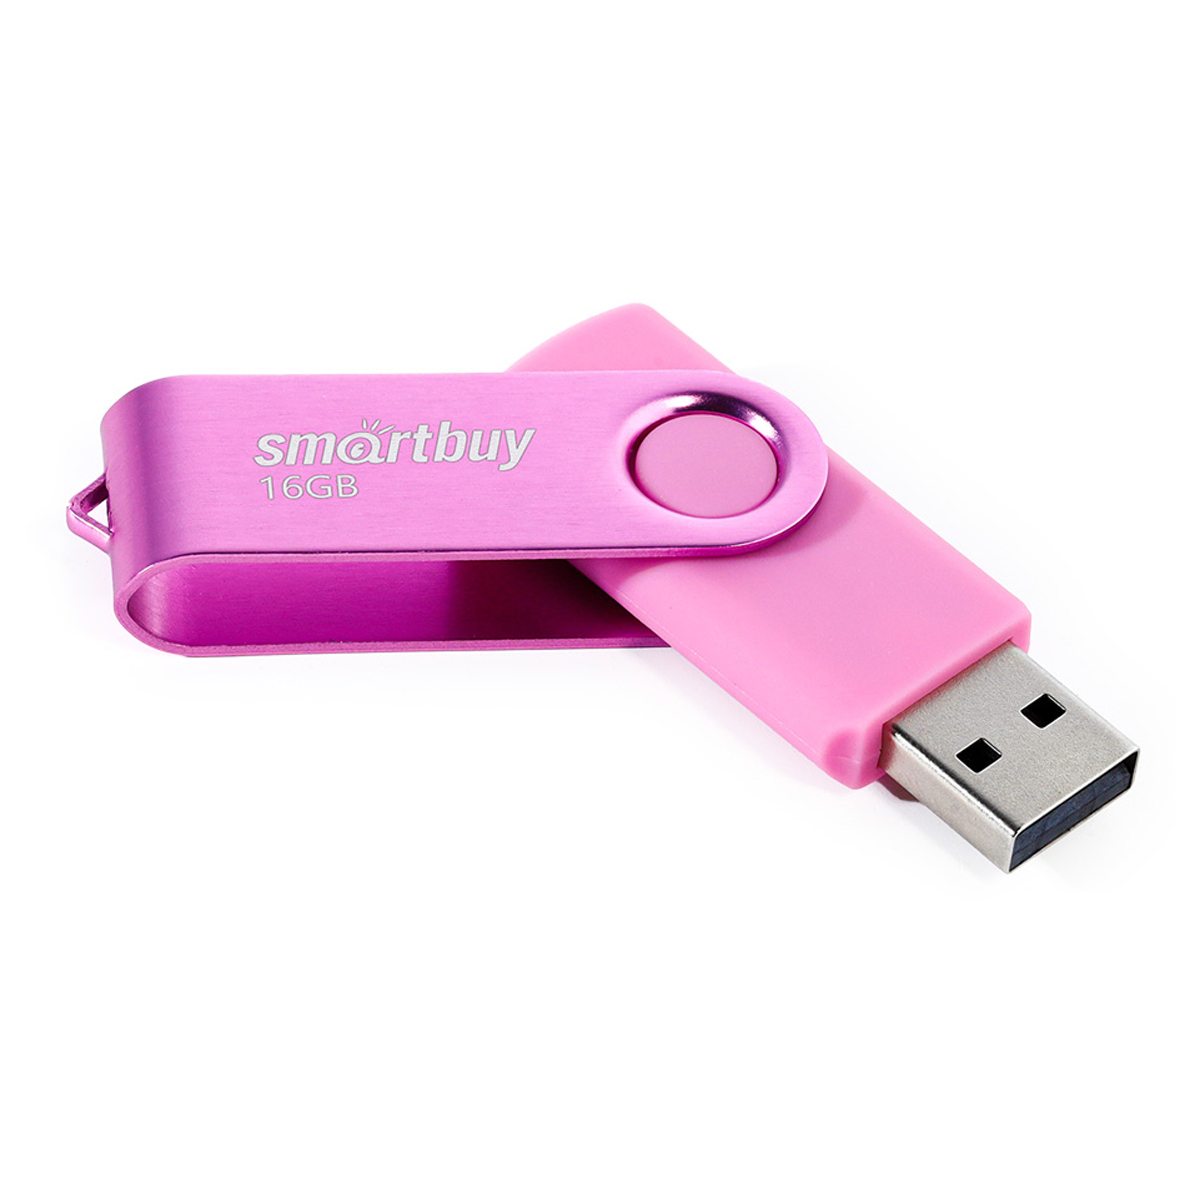  Smart Buy "Twist" 16GB, USB 2.0 Flash Drive,  